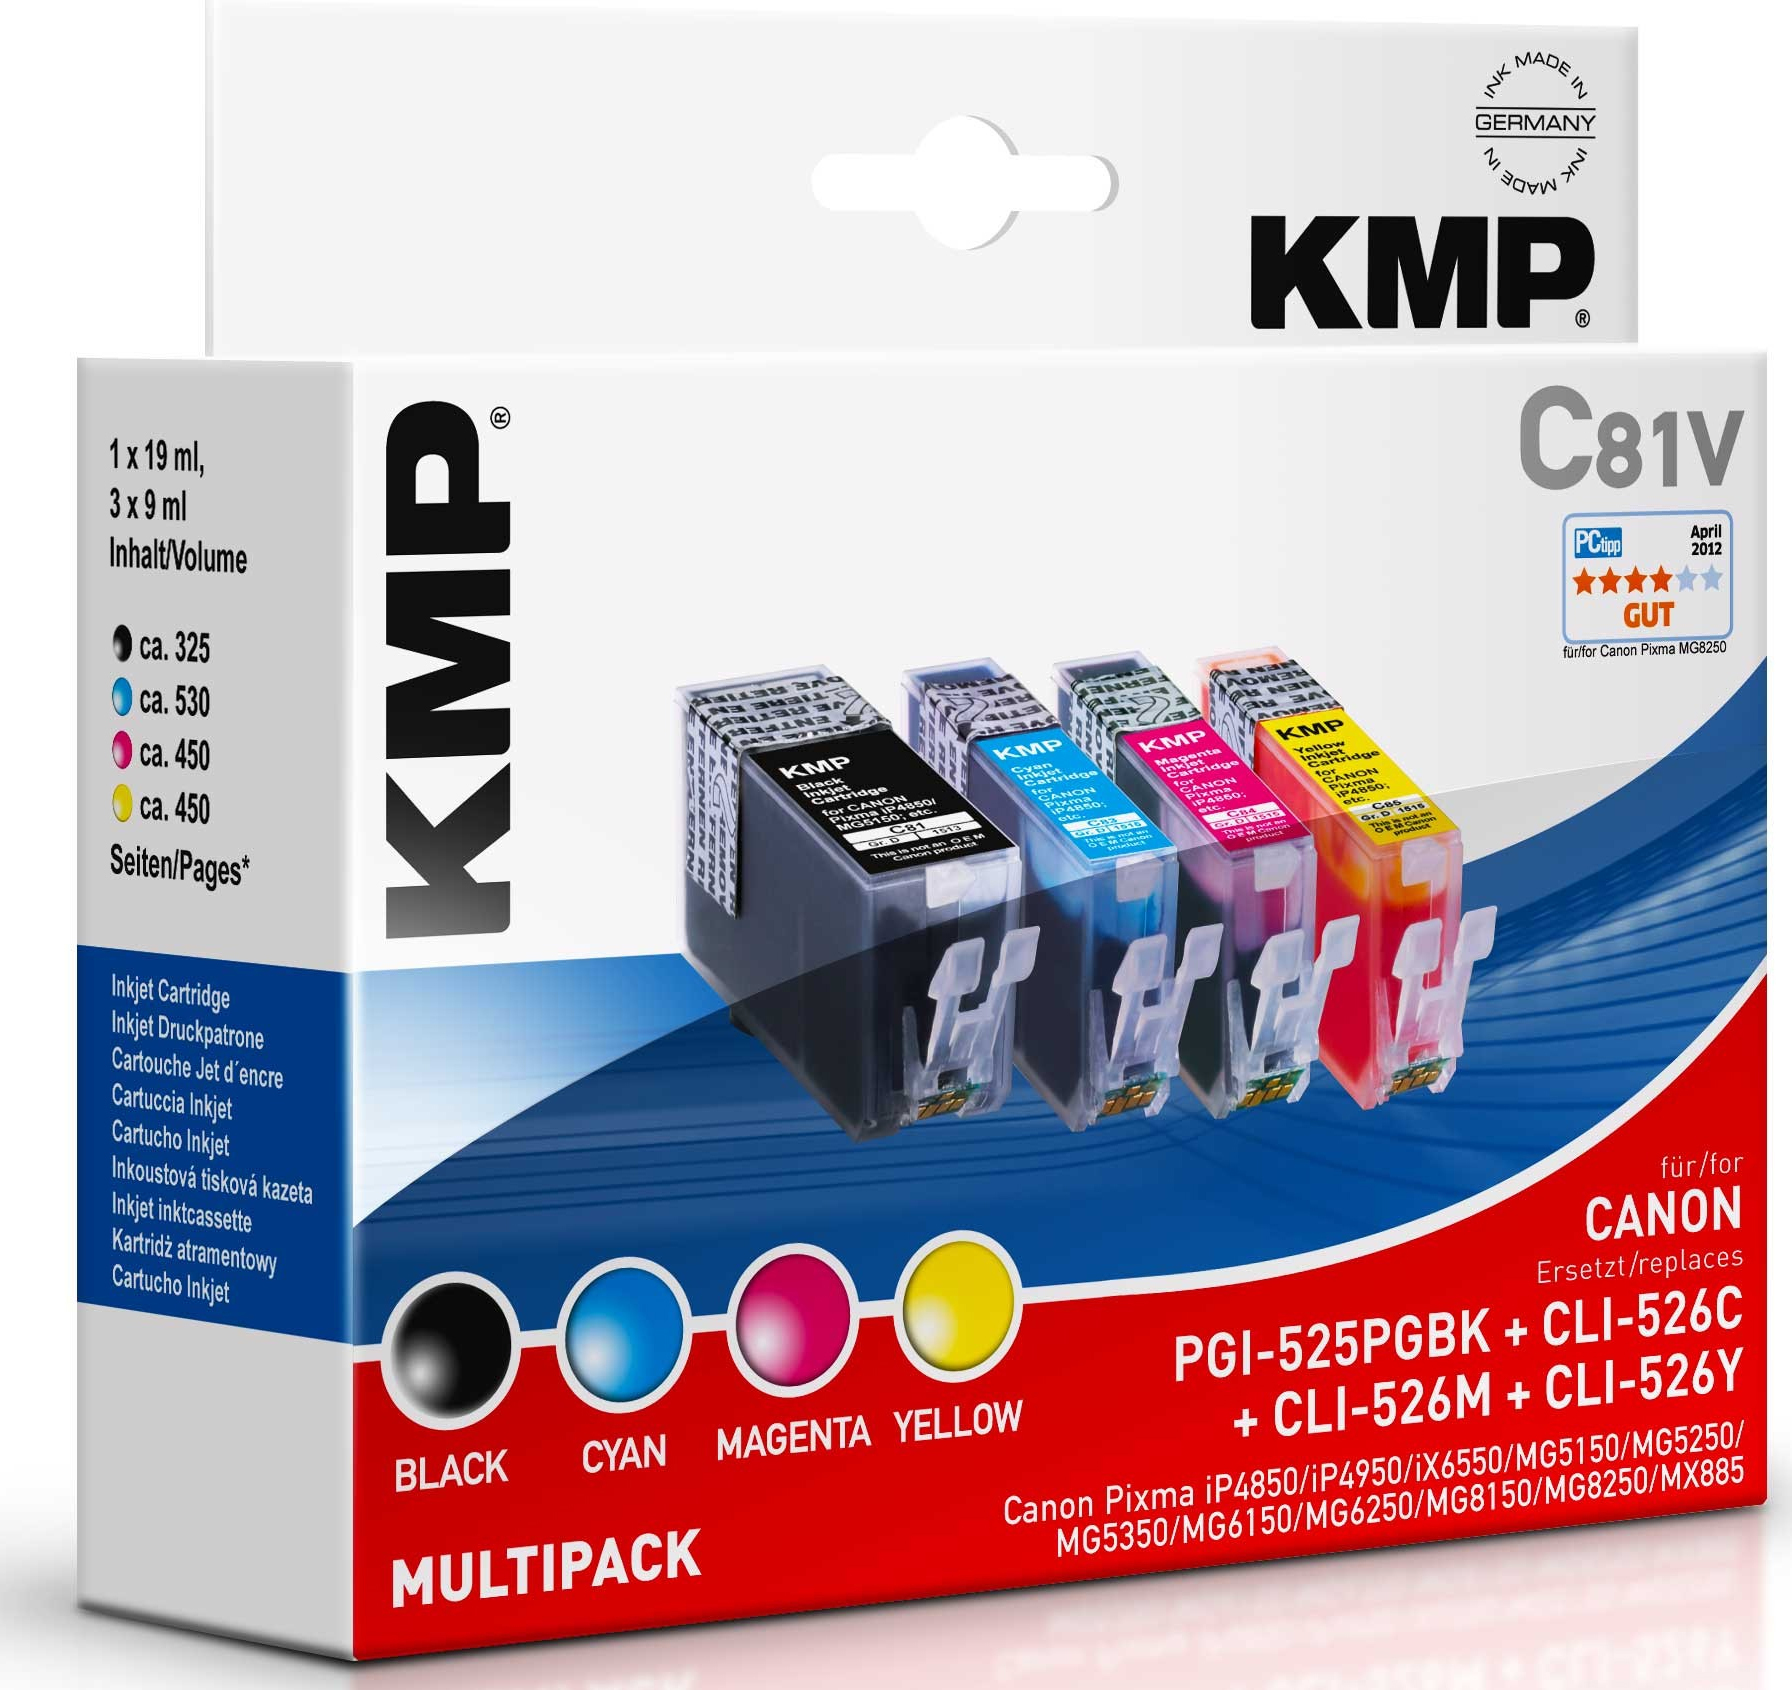 KMP C81V single pack / cyaan, geel, magenta, zwart